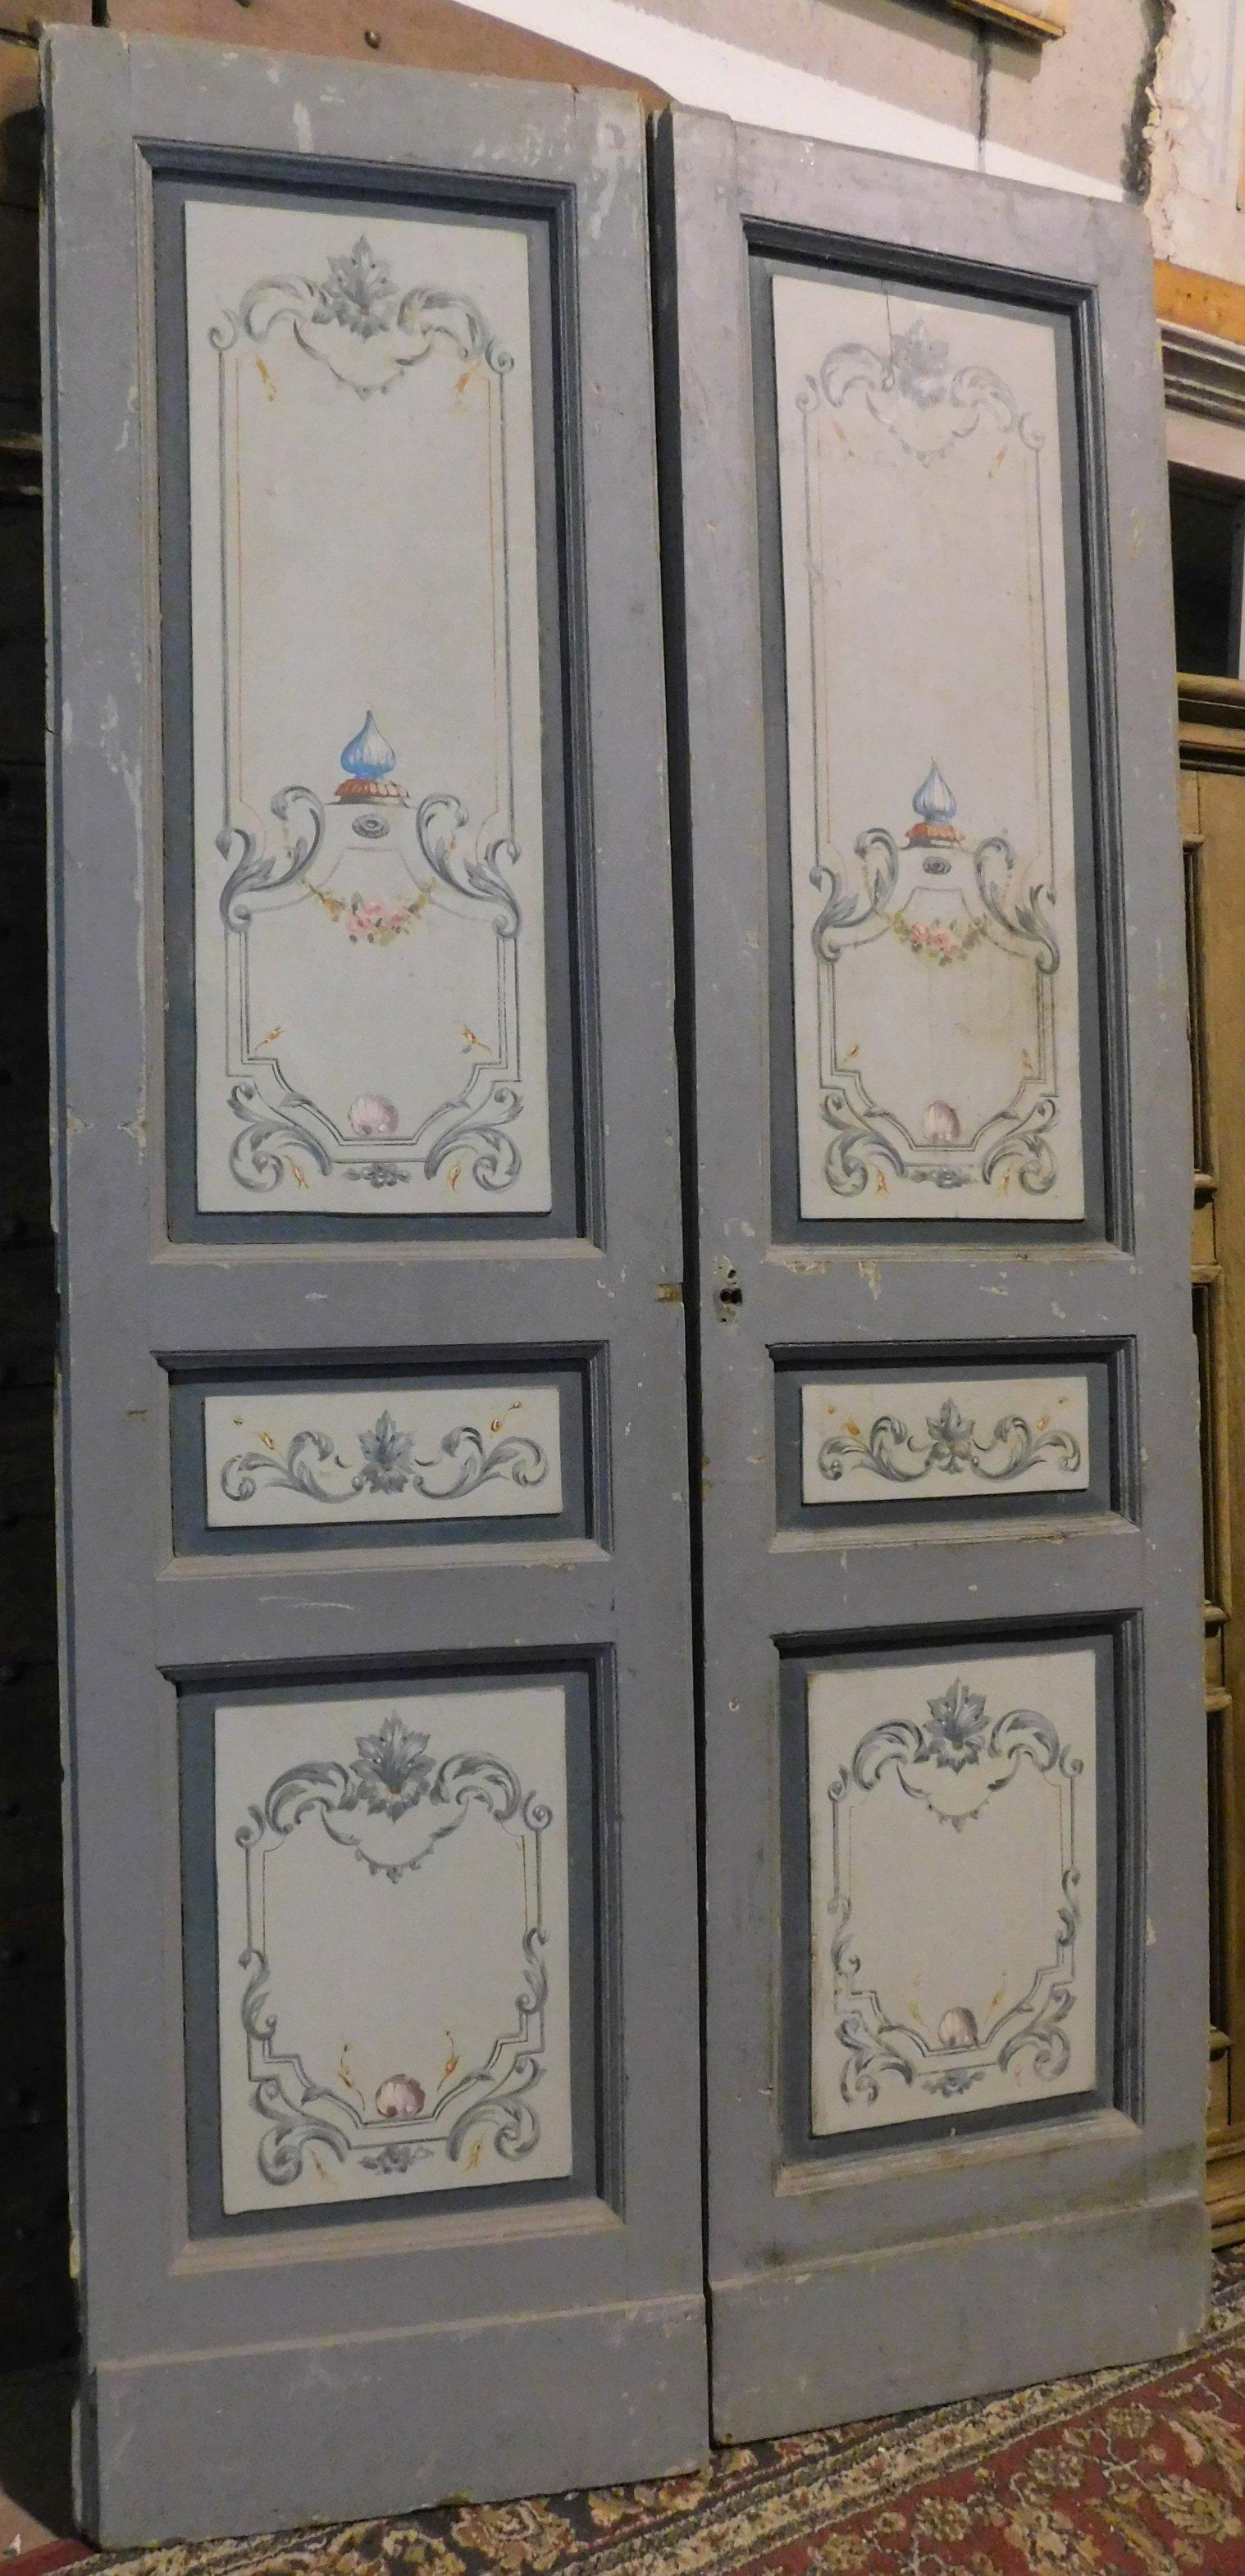 Porte intérieure double ancienne, peinte avec des décorations typiques de l'époque sur un fond gris-bleu, dos blanc, fabriquée à la main au milieu du XIXe siècle en Italie.
La hauteur peut être utilisée peut-être dans des intérieurs industriels,